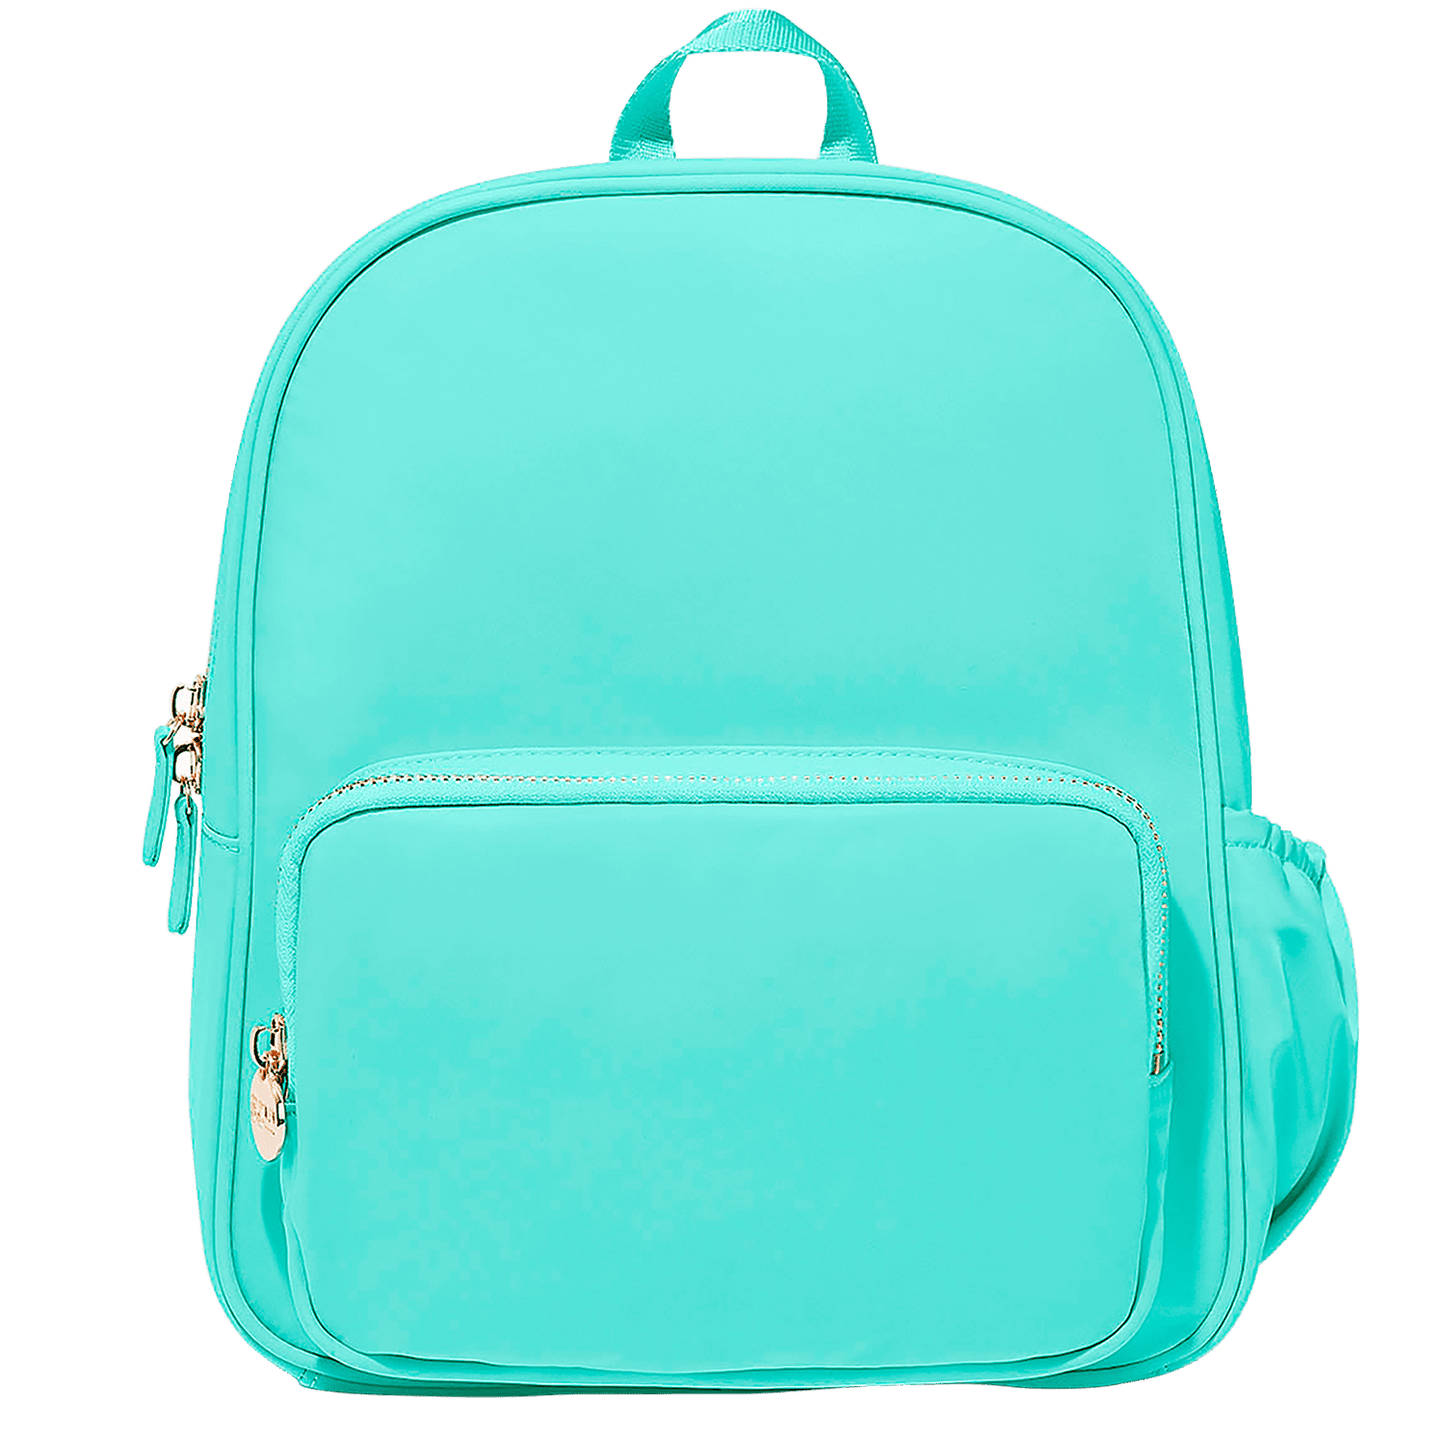 Classic Mini Backpack